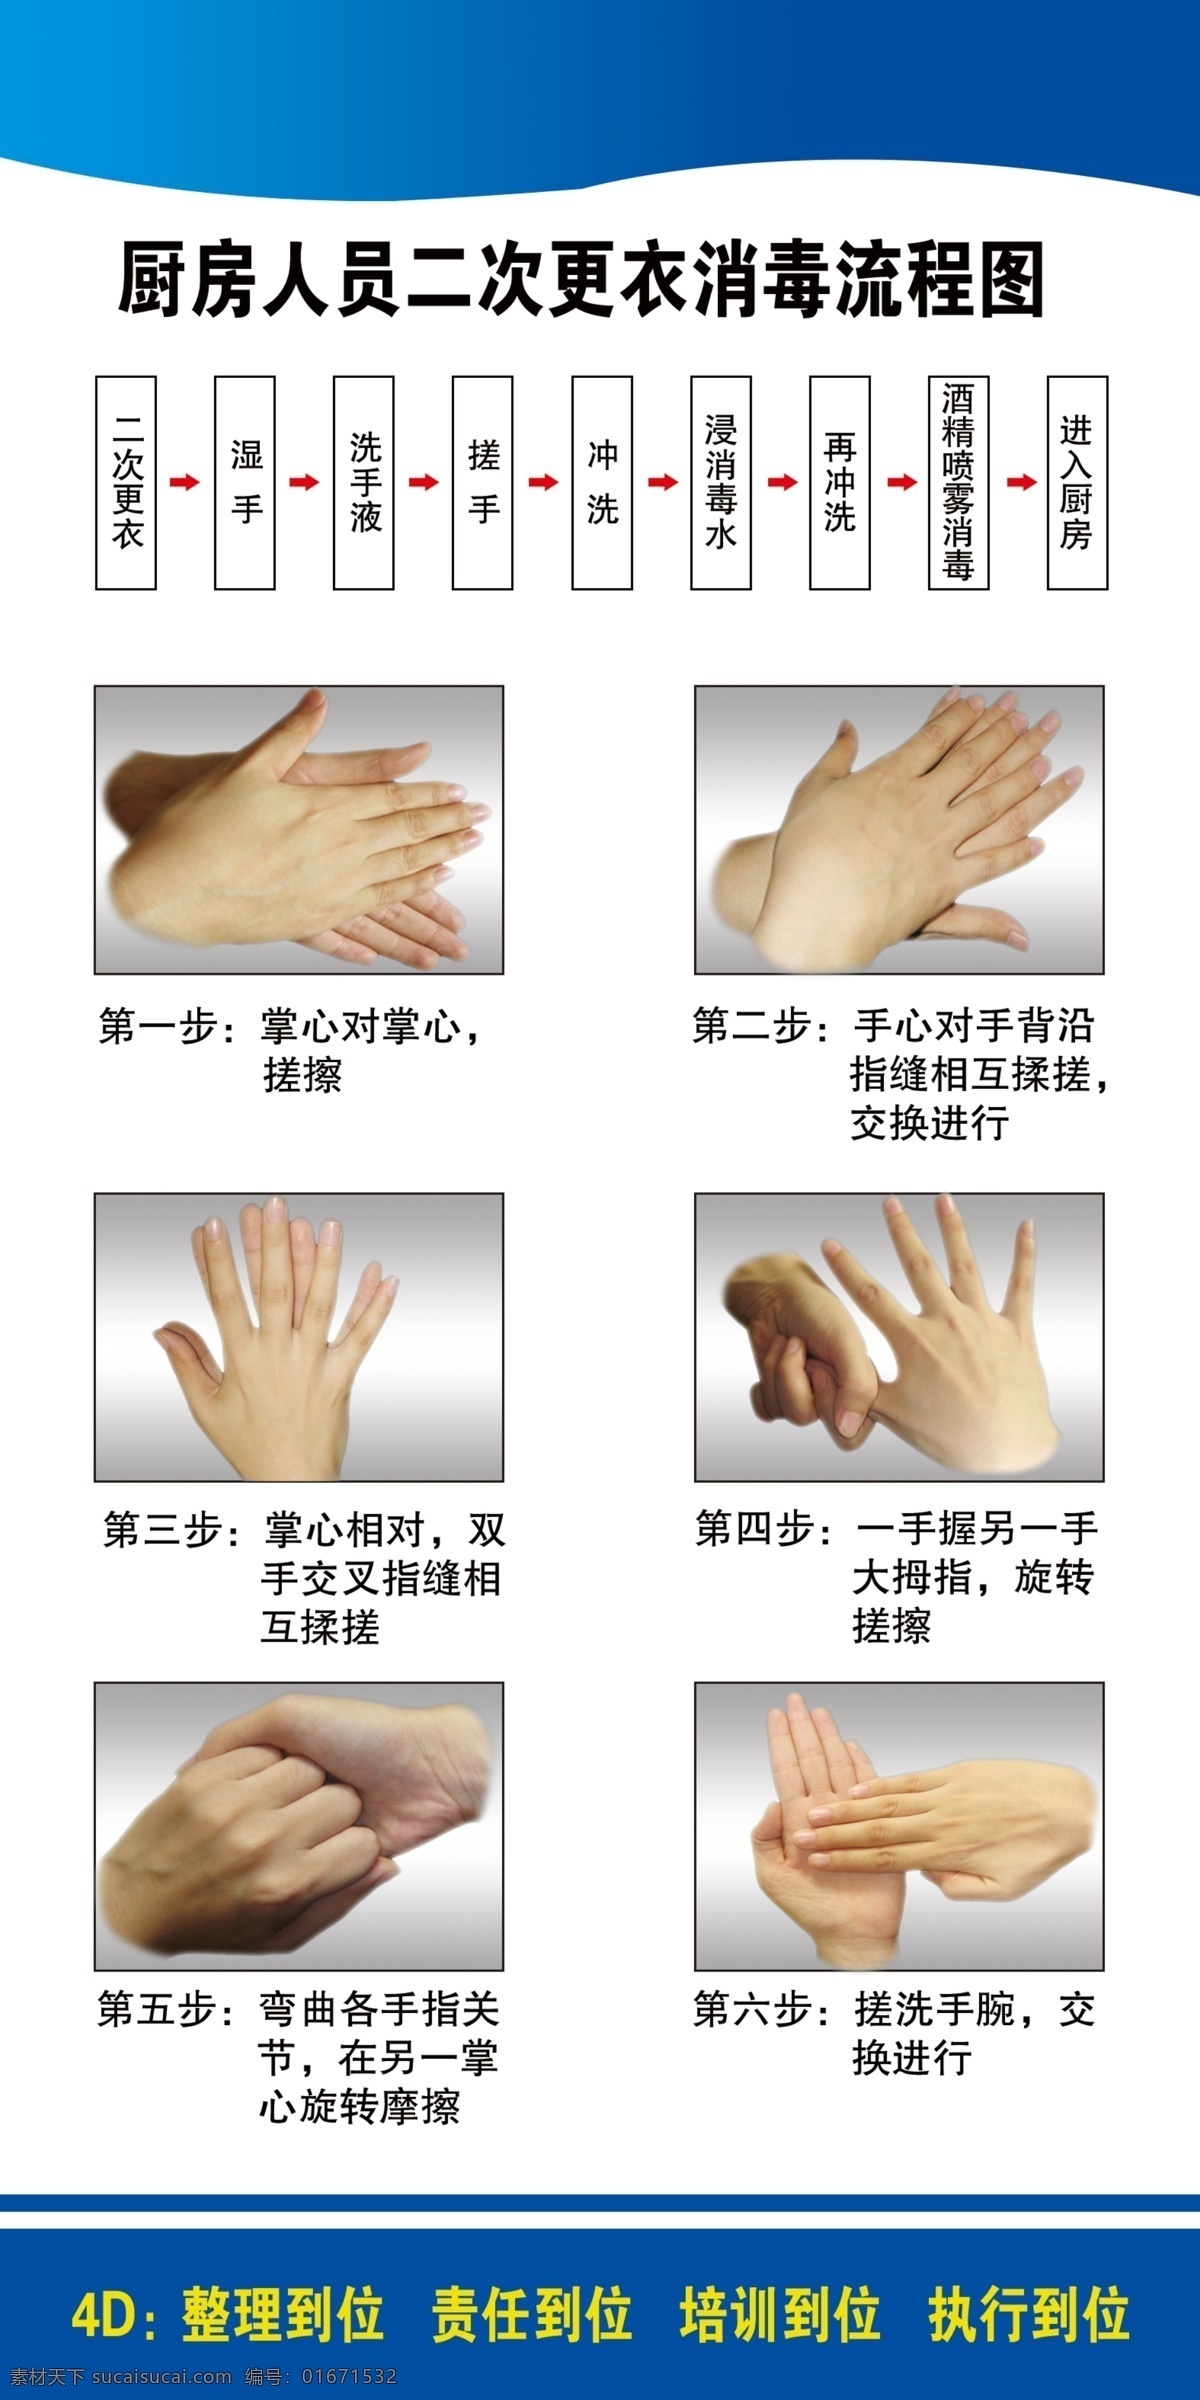 正确 洗手 六 步法 六步法 流程图 4d 厨房人员 霞霞制作 室内广告设计